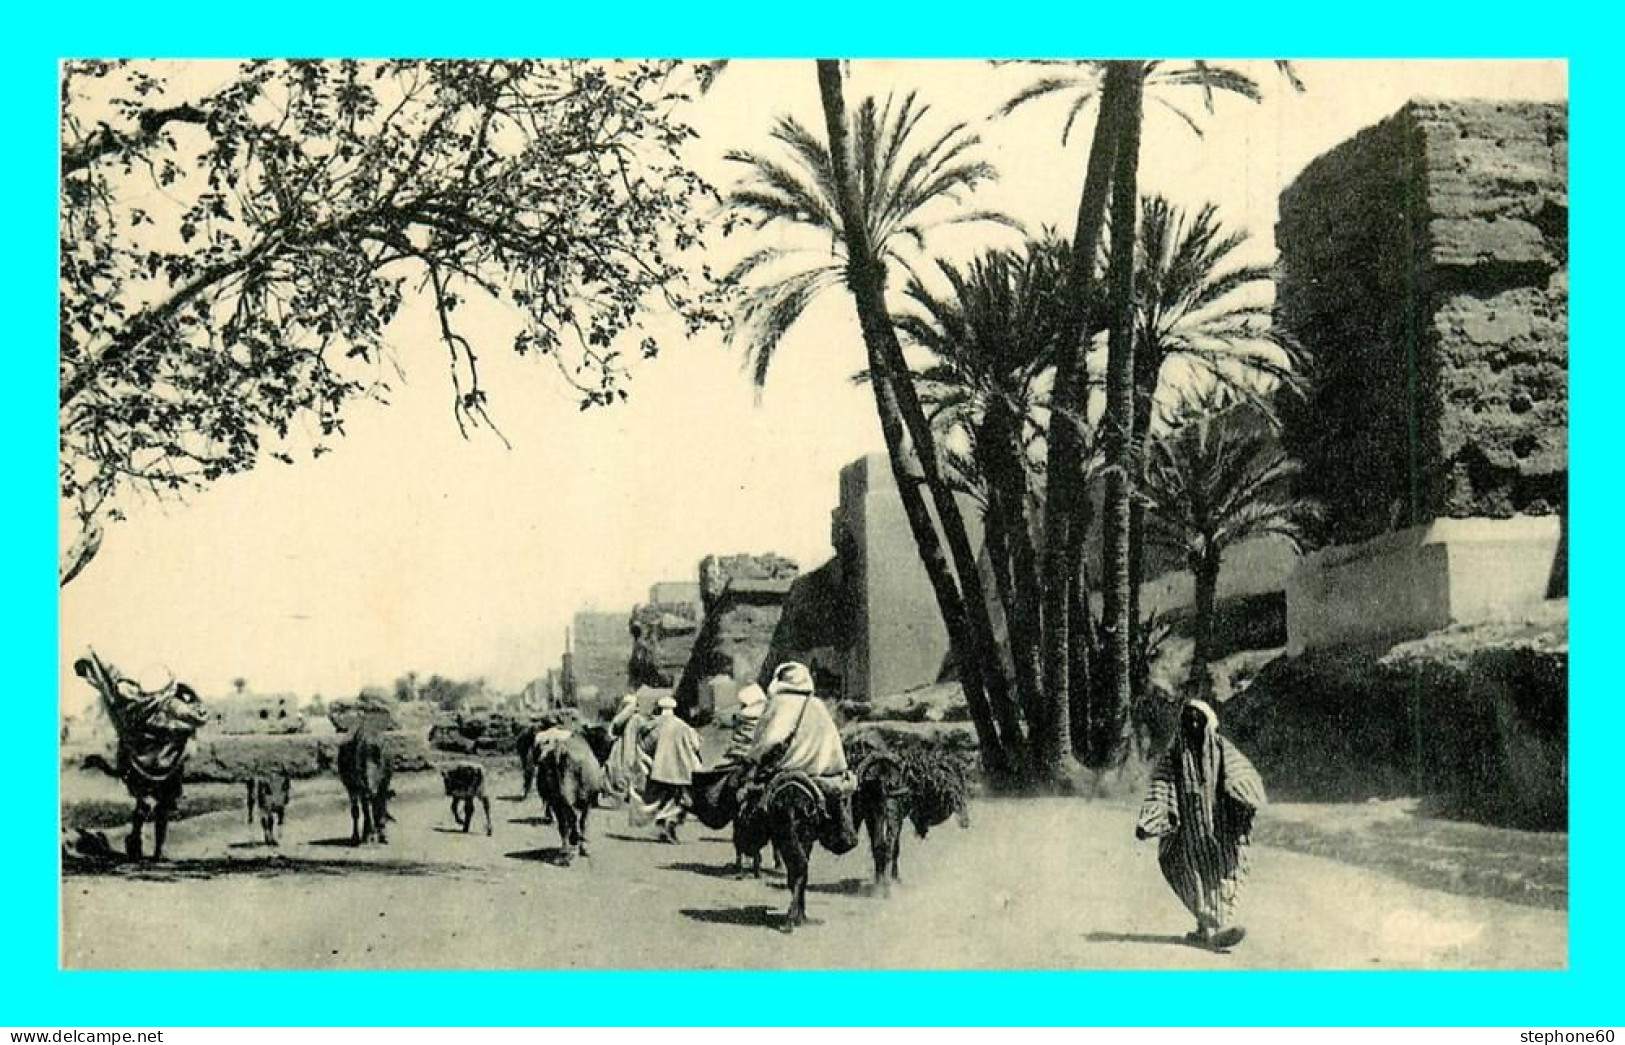 A840 / 191 Maroc MARRAKECH Départ Pour Le Souk ( Timbre ) - Marrakech